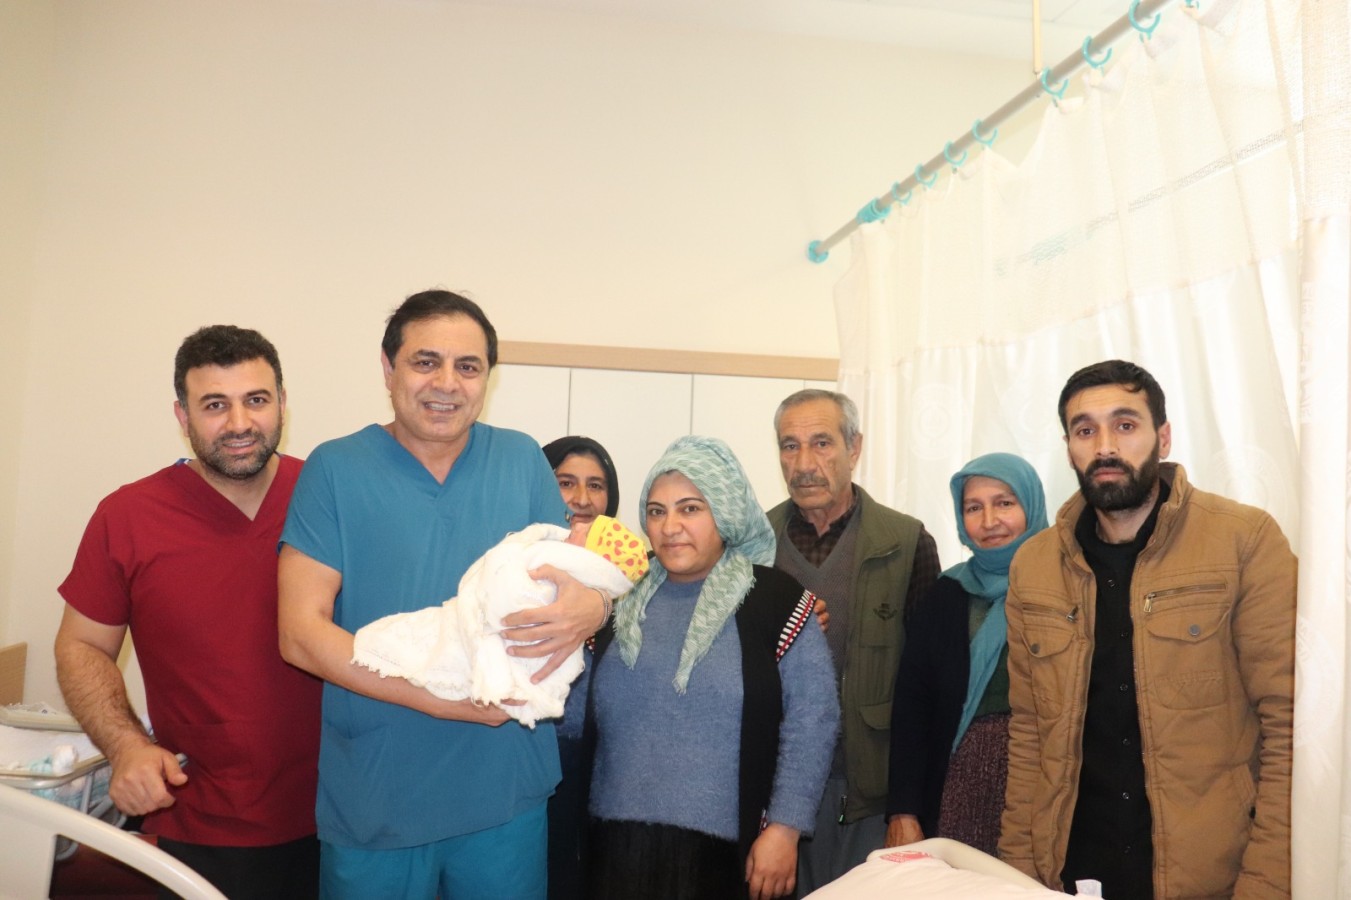 Şanlıurfa’daki hastane bir aileye daha umut oldu!;